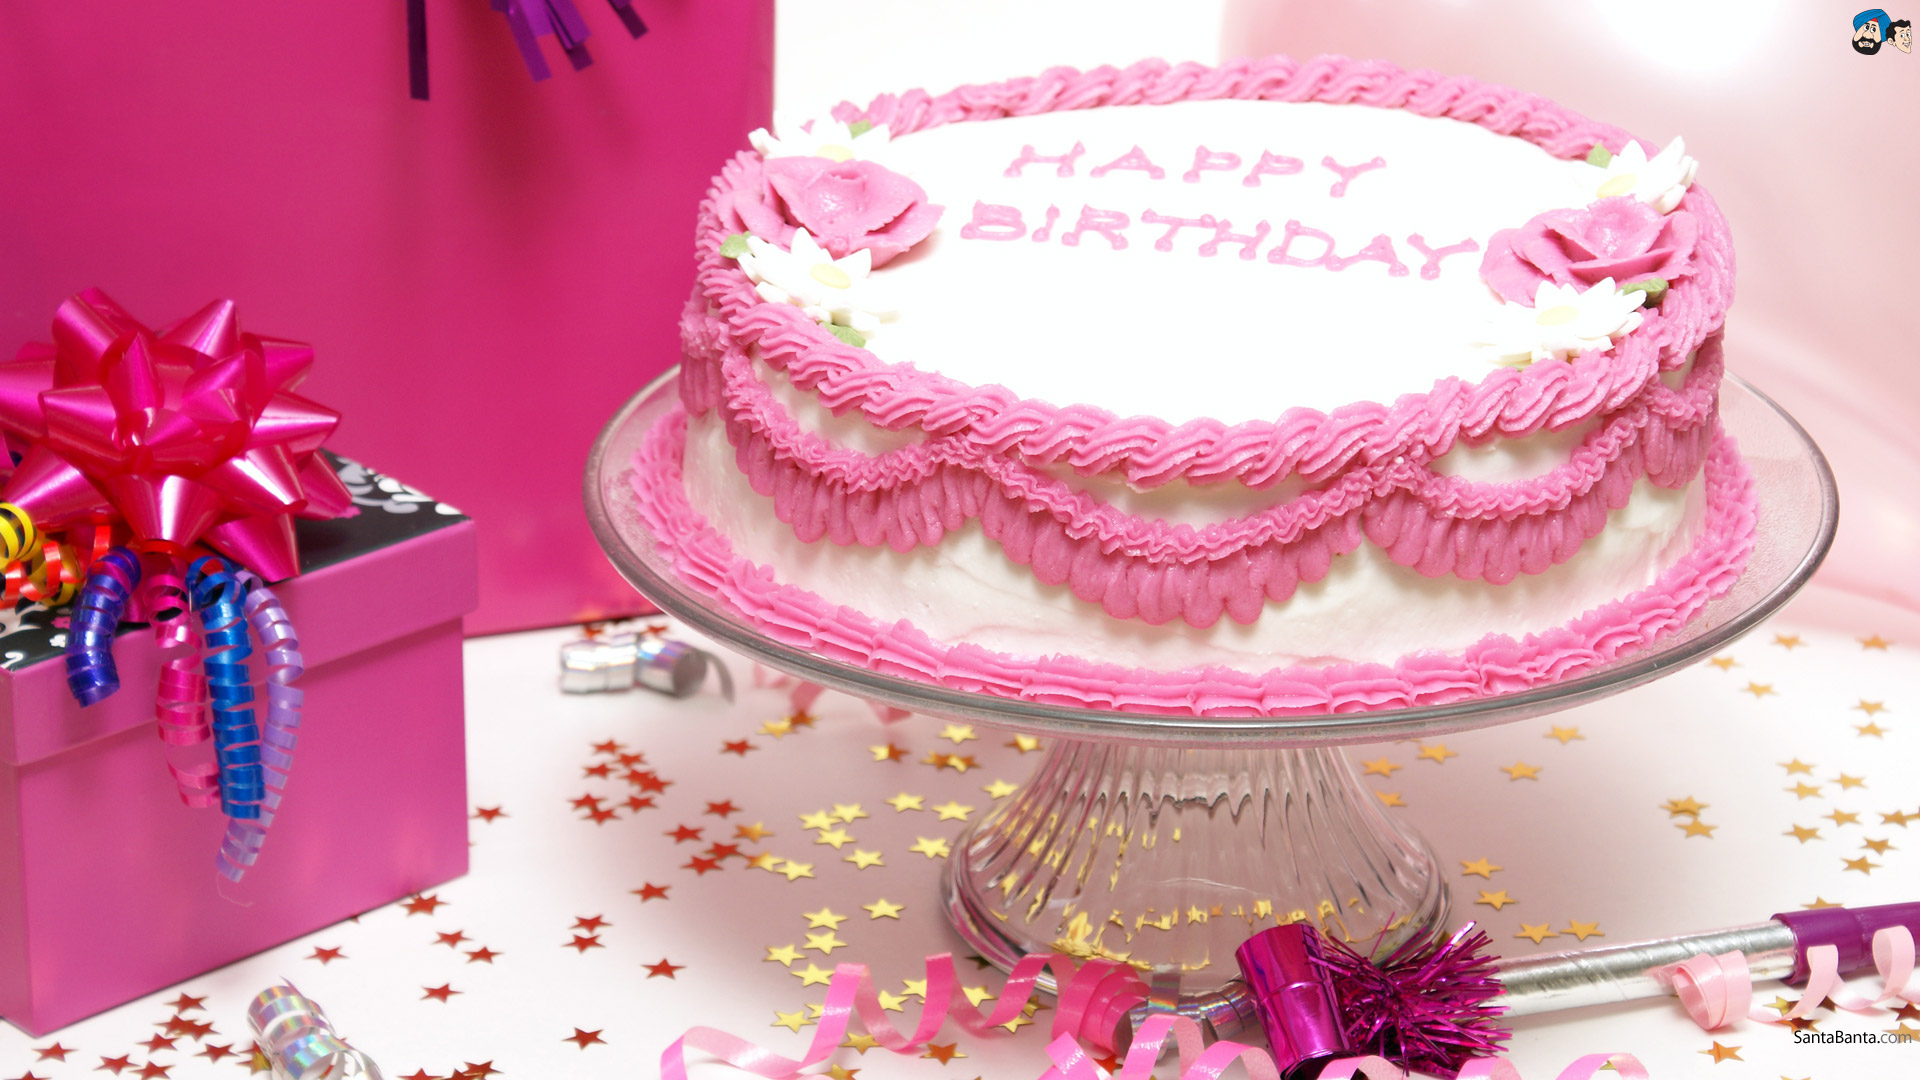 madhu name wallpaper,cake,pink,sugar paste,buttercream,birthday cake